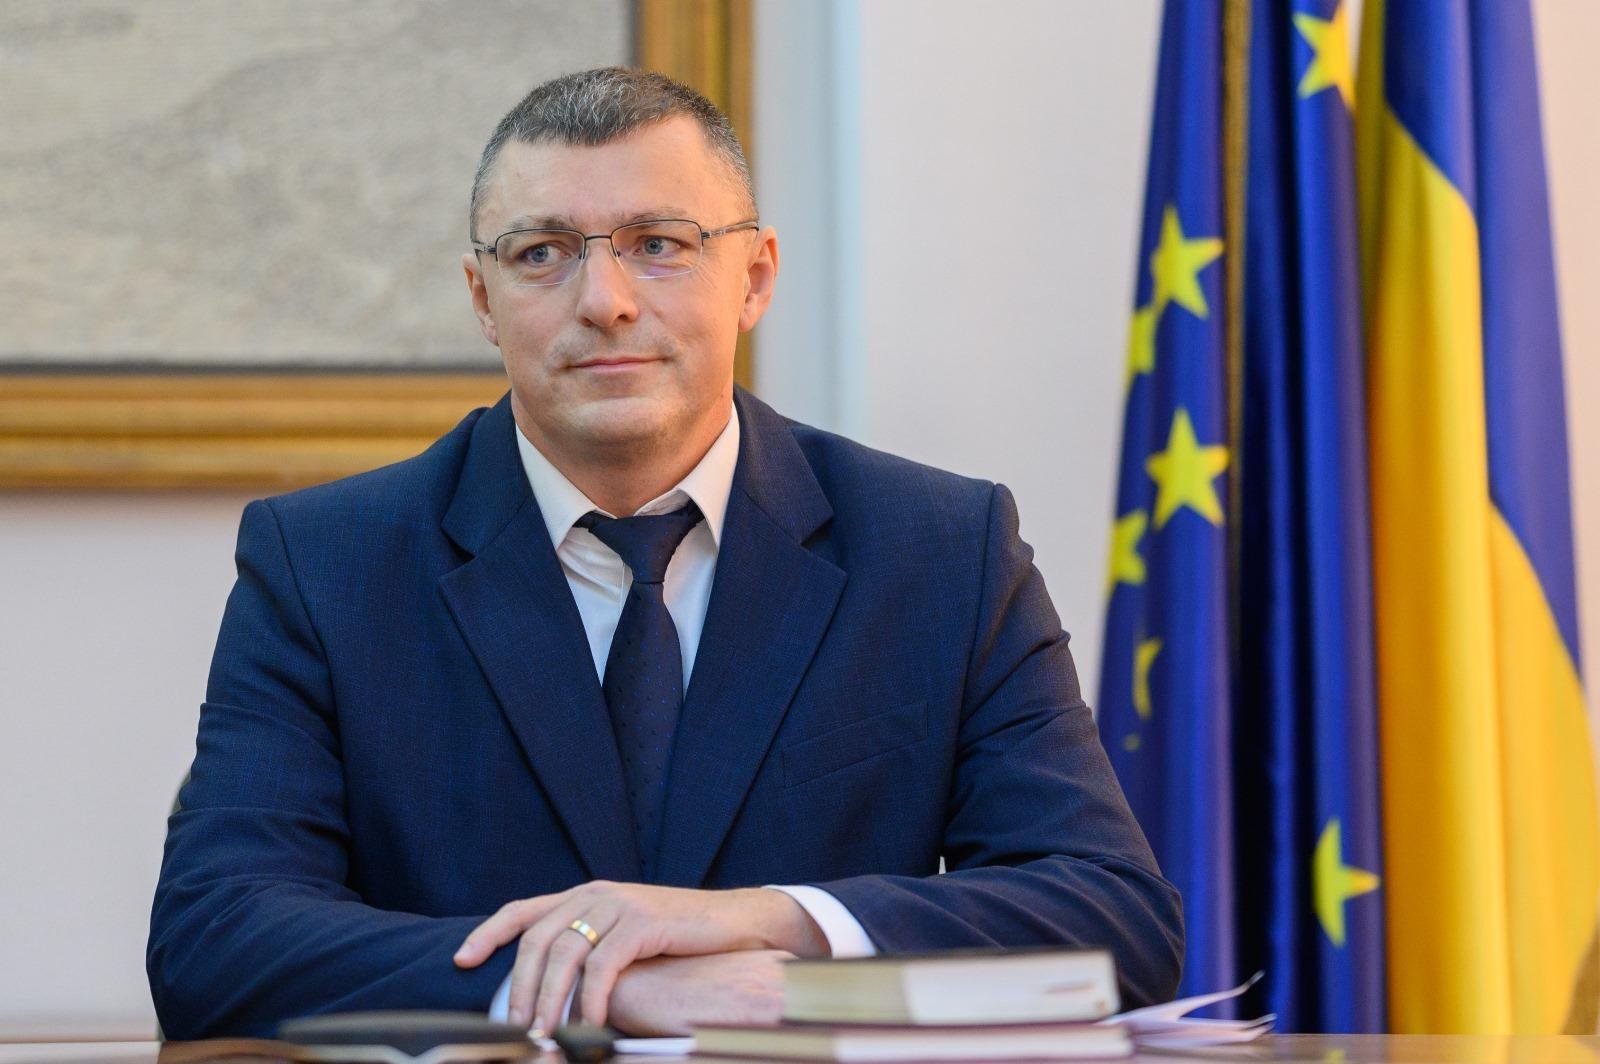  Liderul grupului consilierilor județeni PNL Iași, Costel Dolachi, este noul subprefect al județului Iași